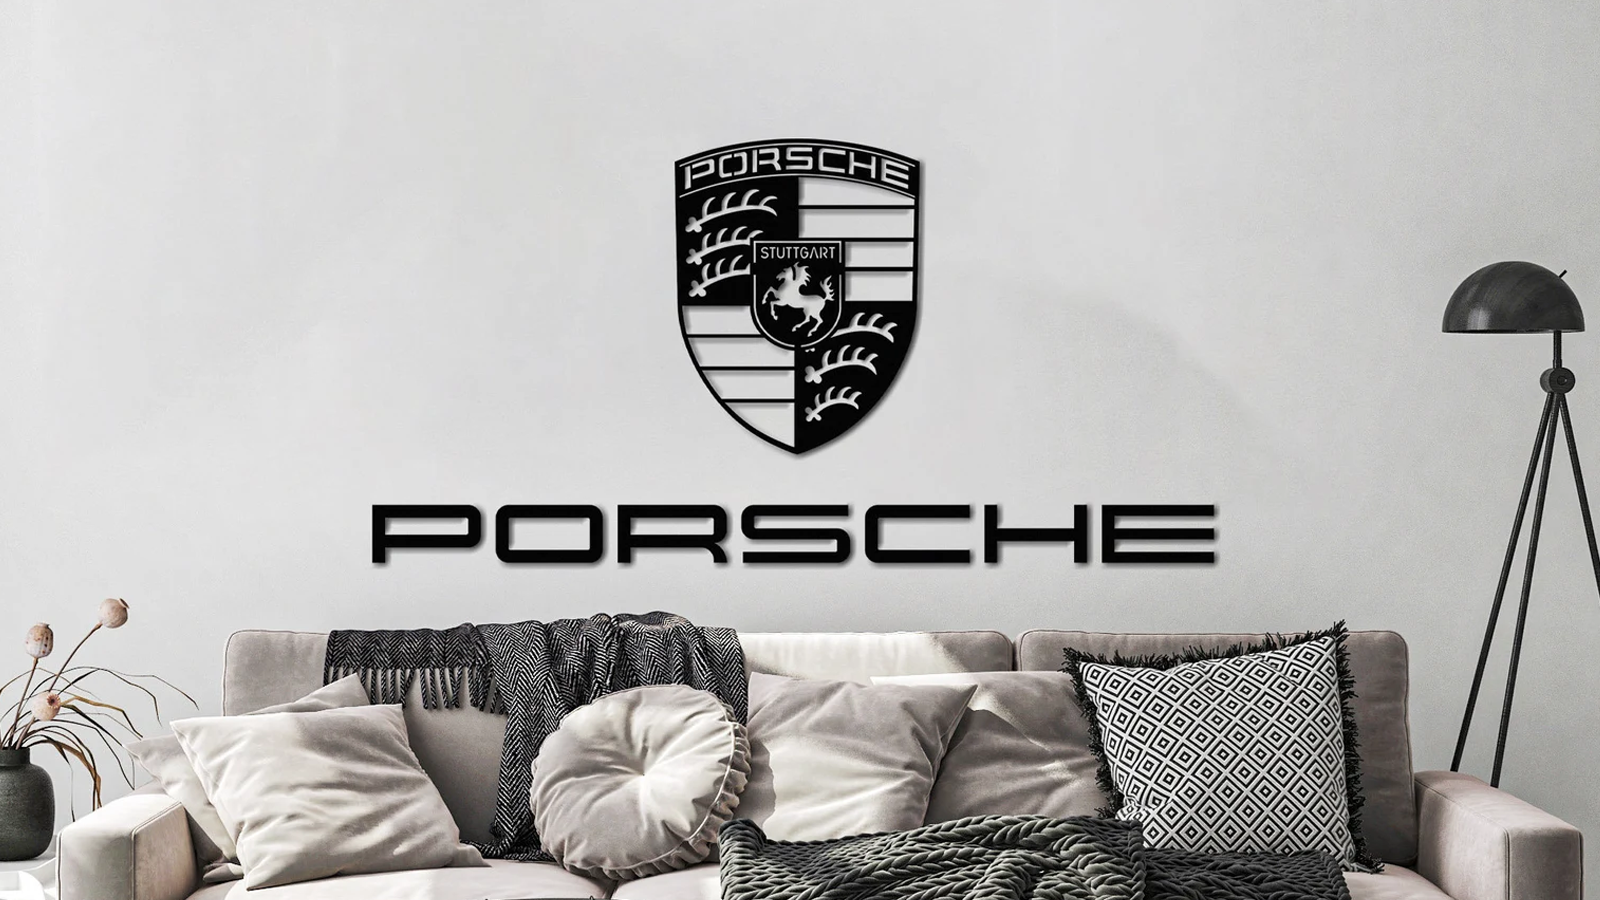 6 Must-Have Decorative Pieces For Porschephiles | Rennlist